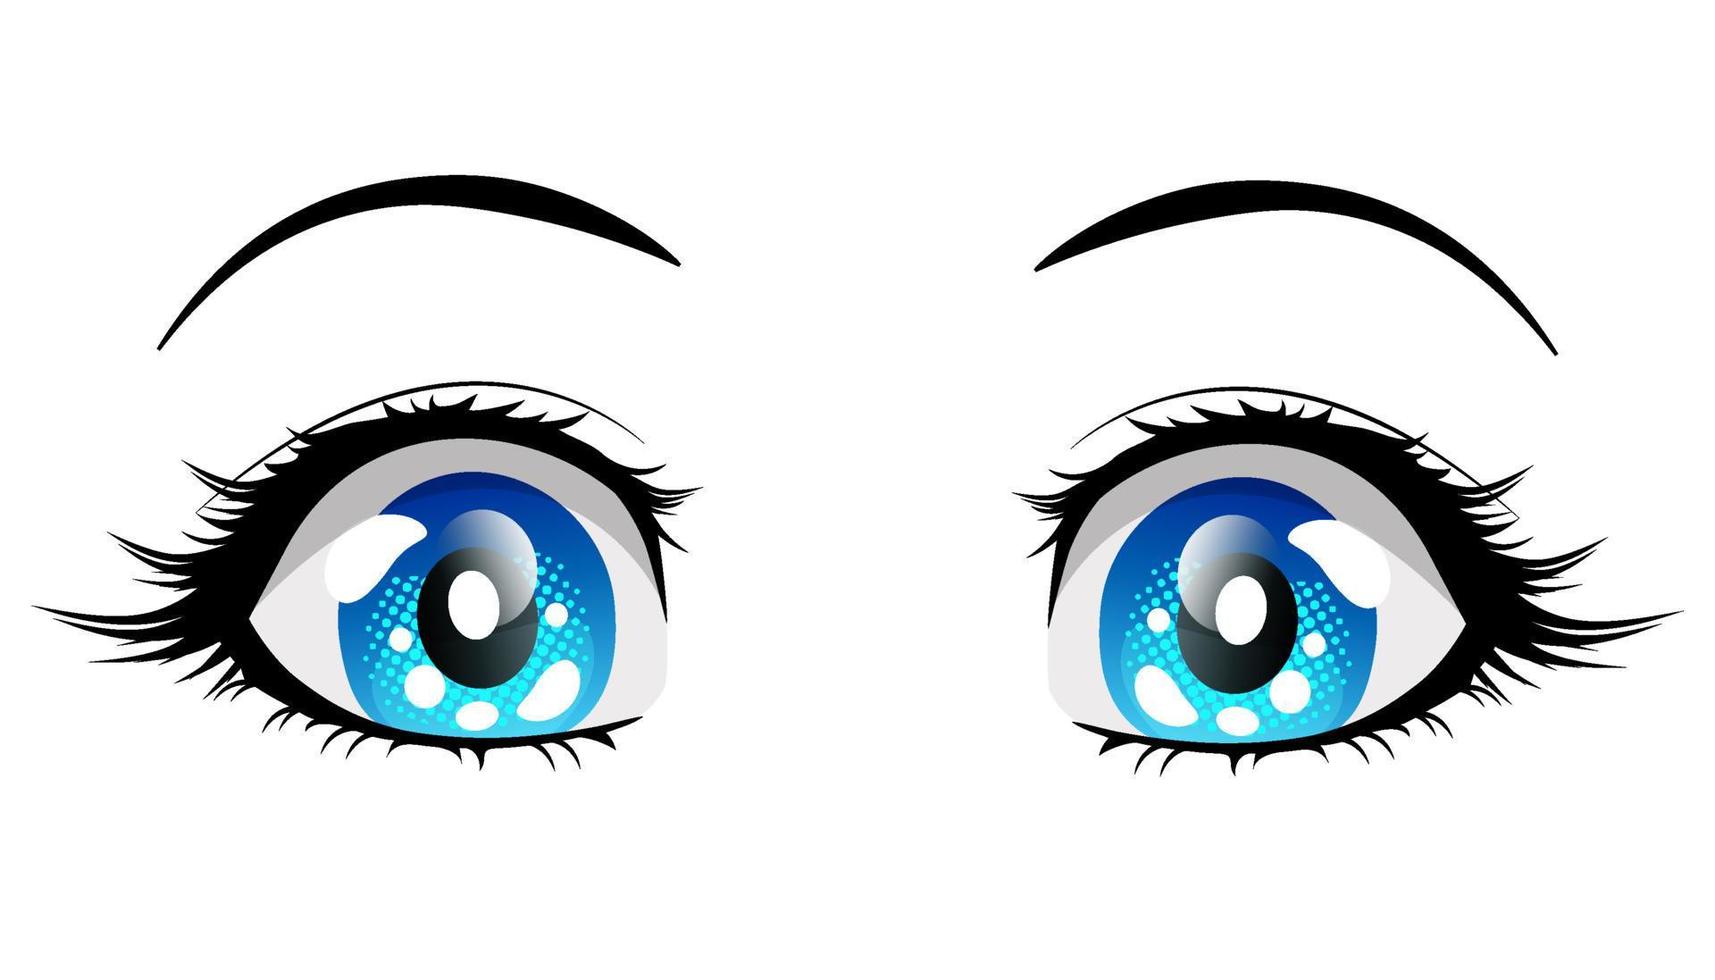 fille d'anime aux yeux bleus surpris. illustration vectorielle dans le style manga isolé sur fond blanc. vecteur